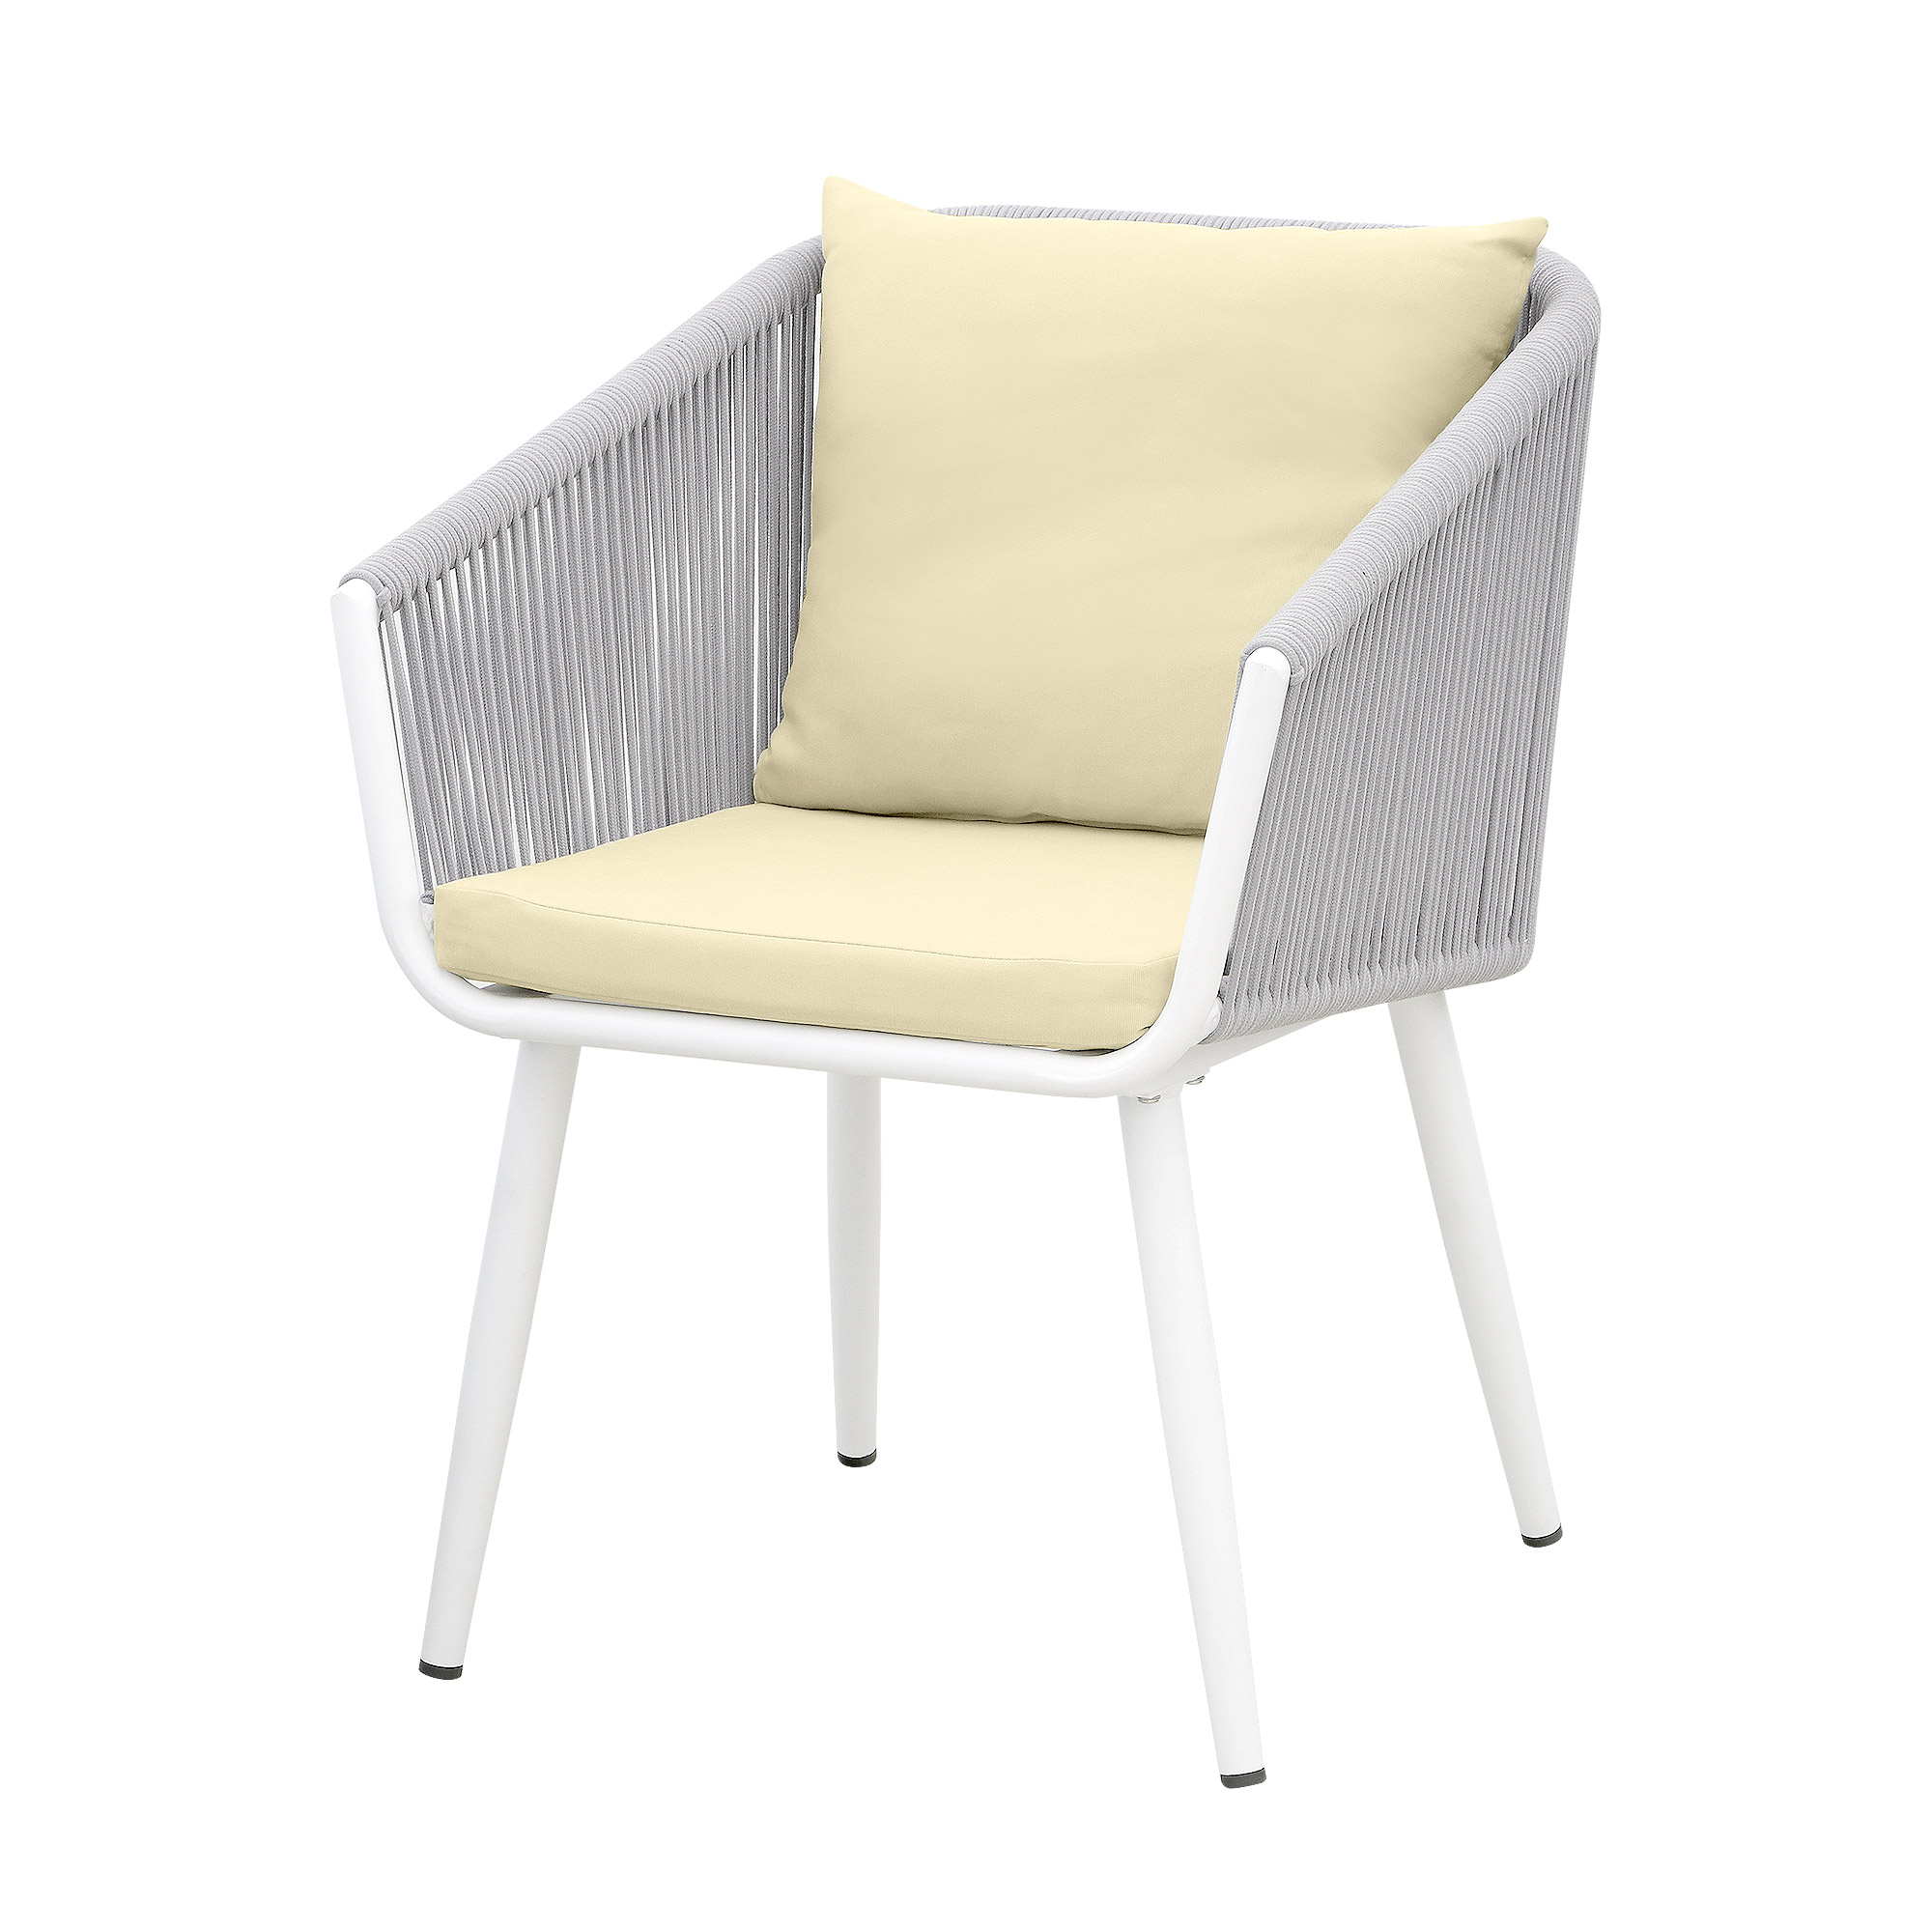 Комплект мебели Obt light 2 кресла+столик, цвет белый, размер 59х64х78 см - фото 3